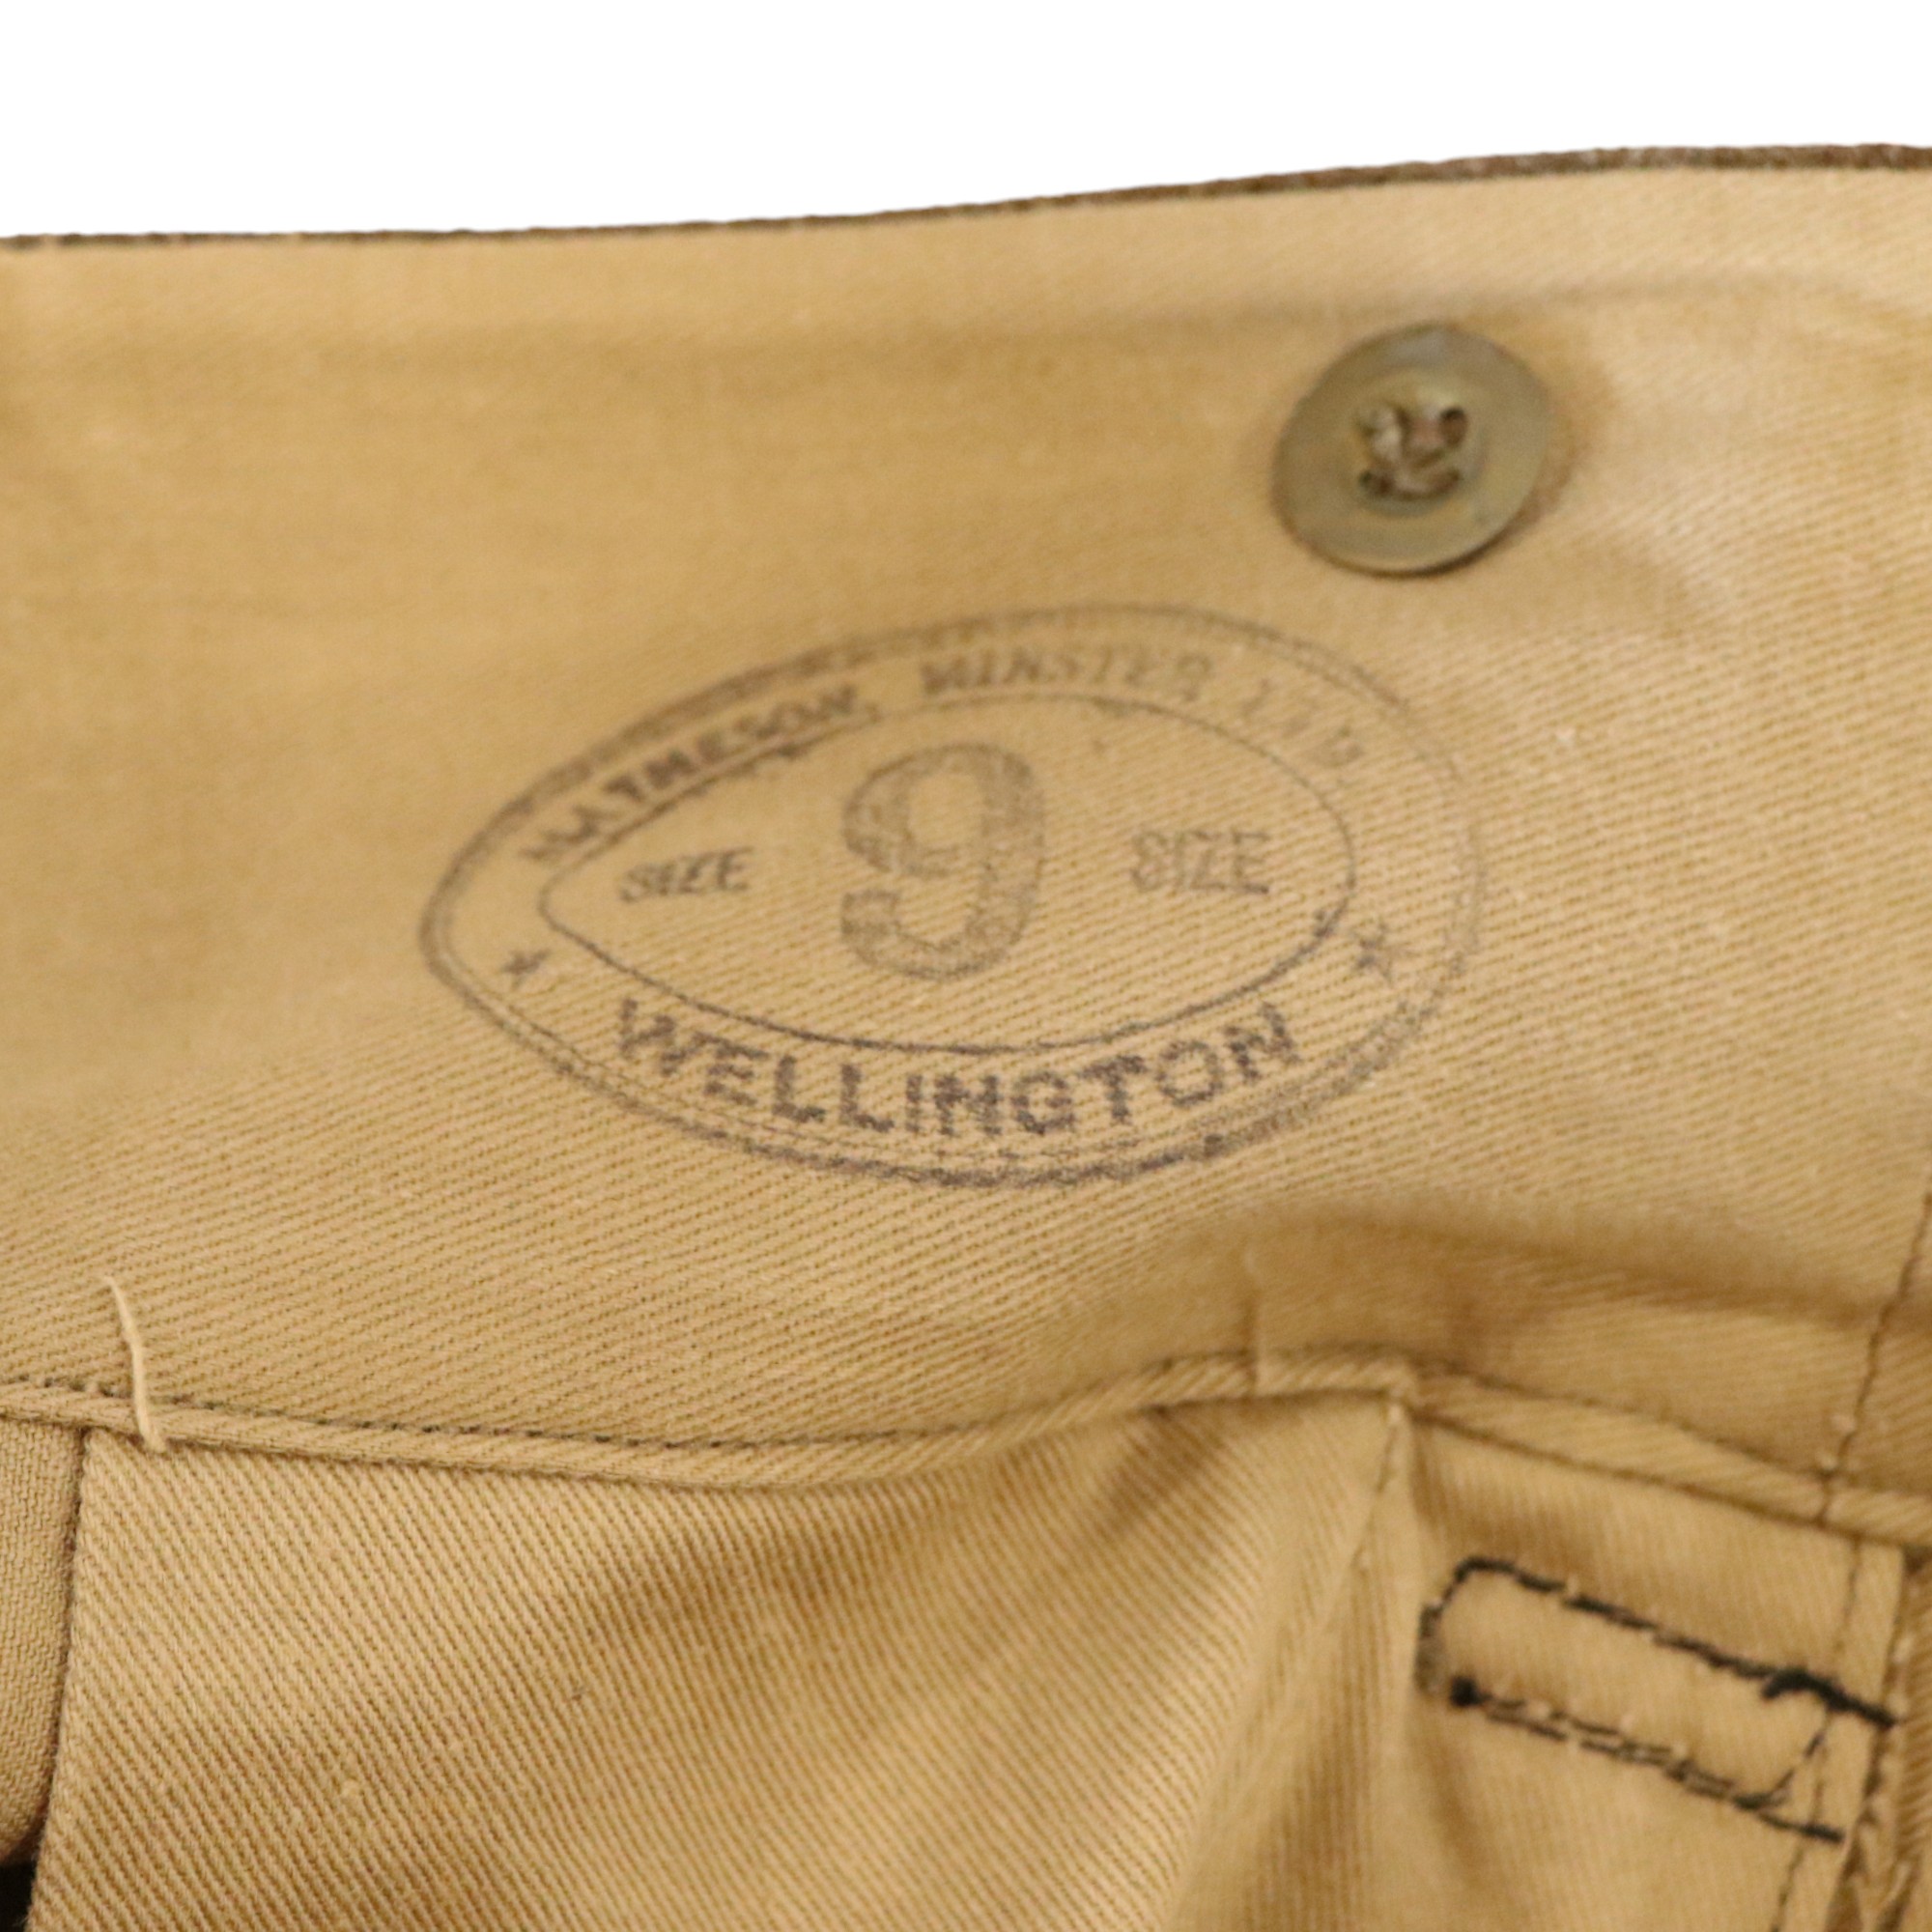 A pair of Second World War New Zealand Battledress trousers - Image 4 of 4